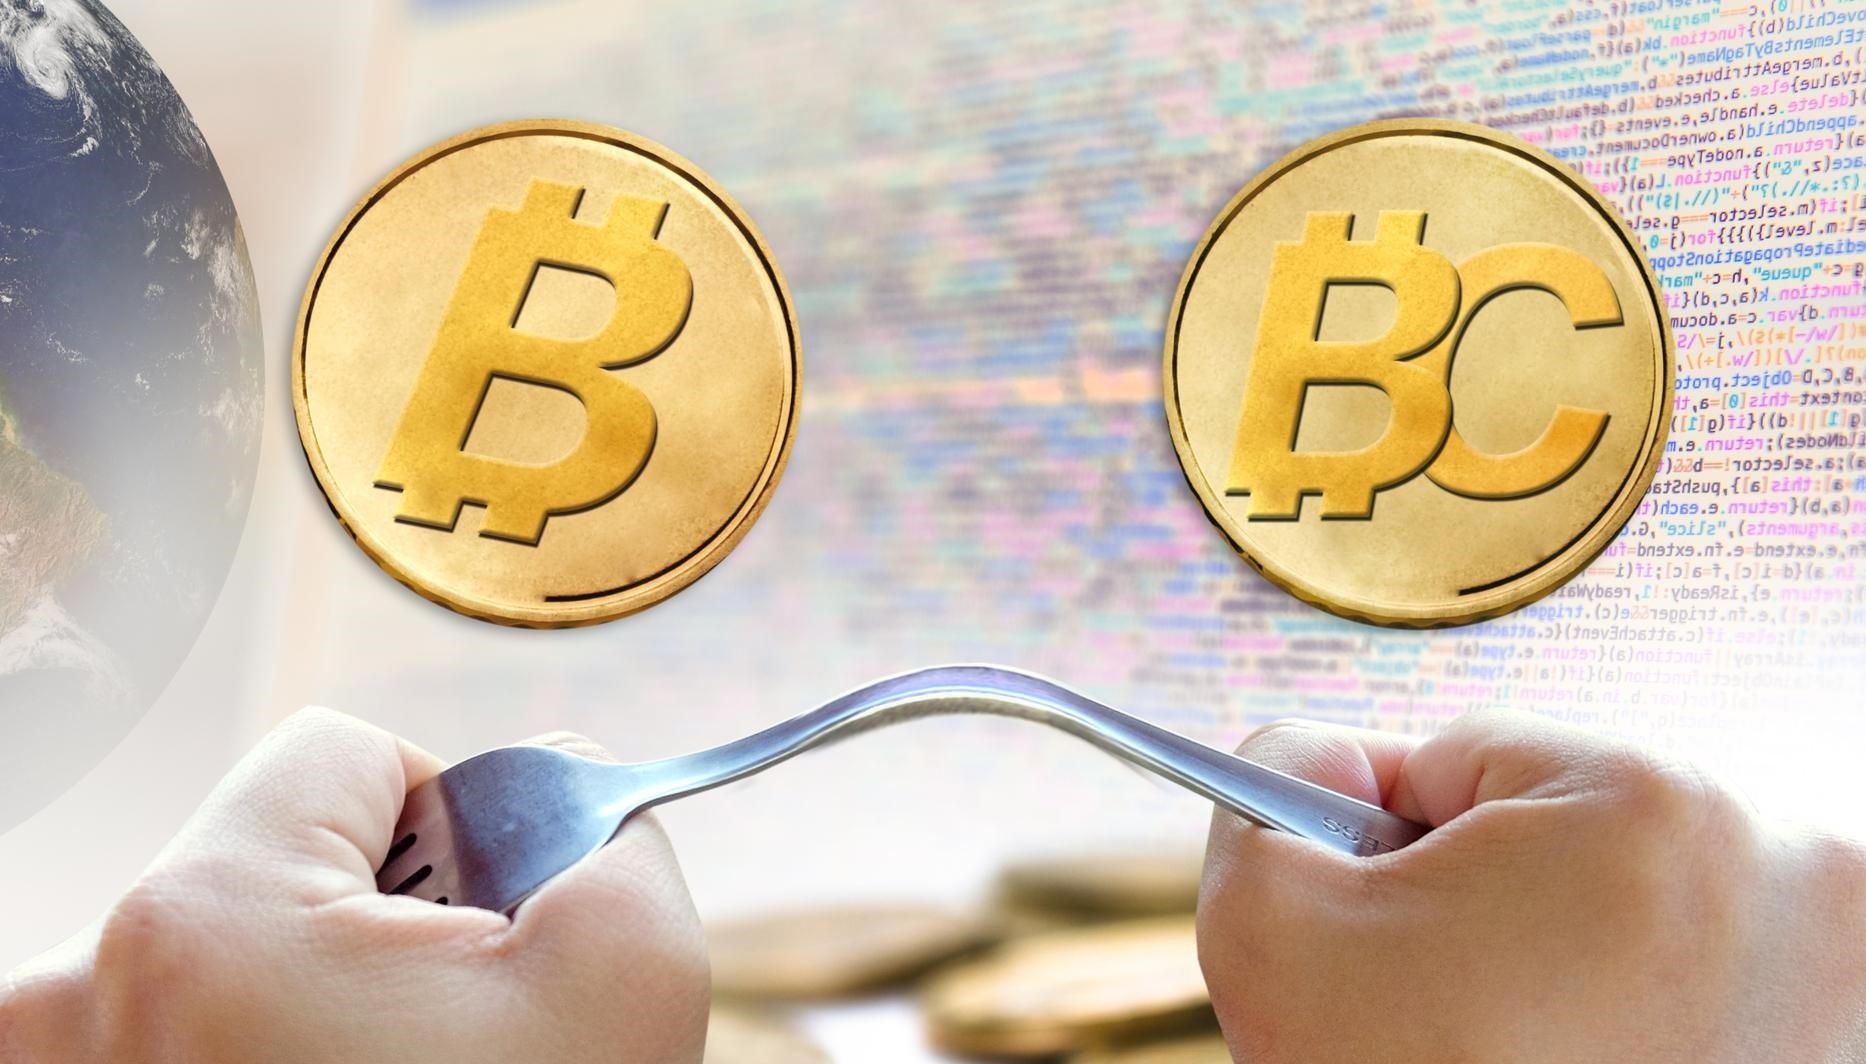 Bitcoin And Bitcoin Cash